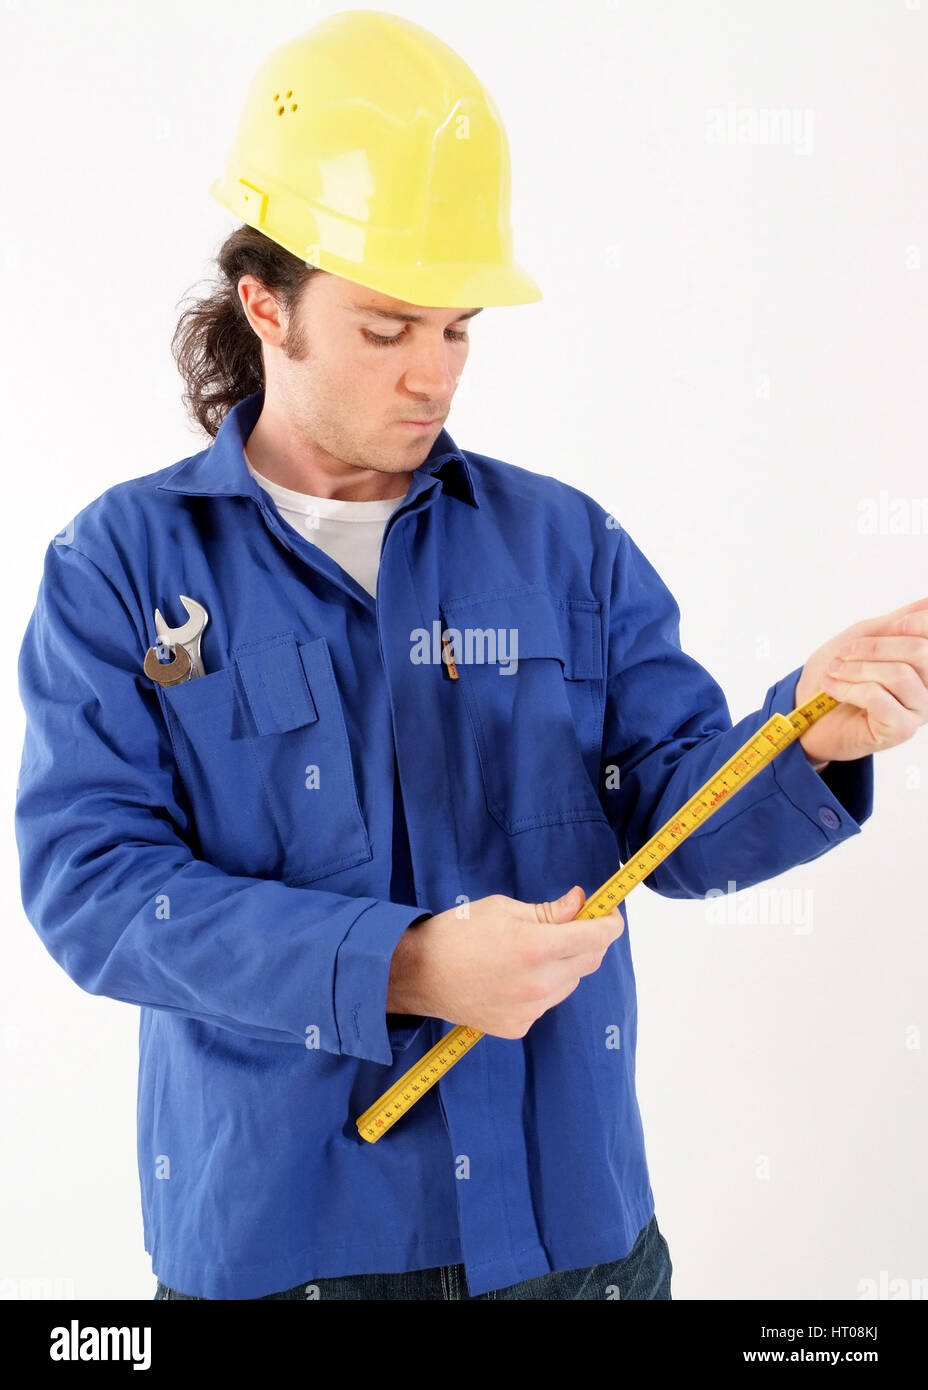 Bauarbeiter mit Blaumann, Bauhelm und Werkzeug - building worker with tools  Stock Photo - Alamy